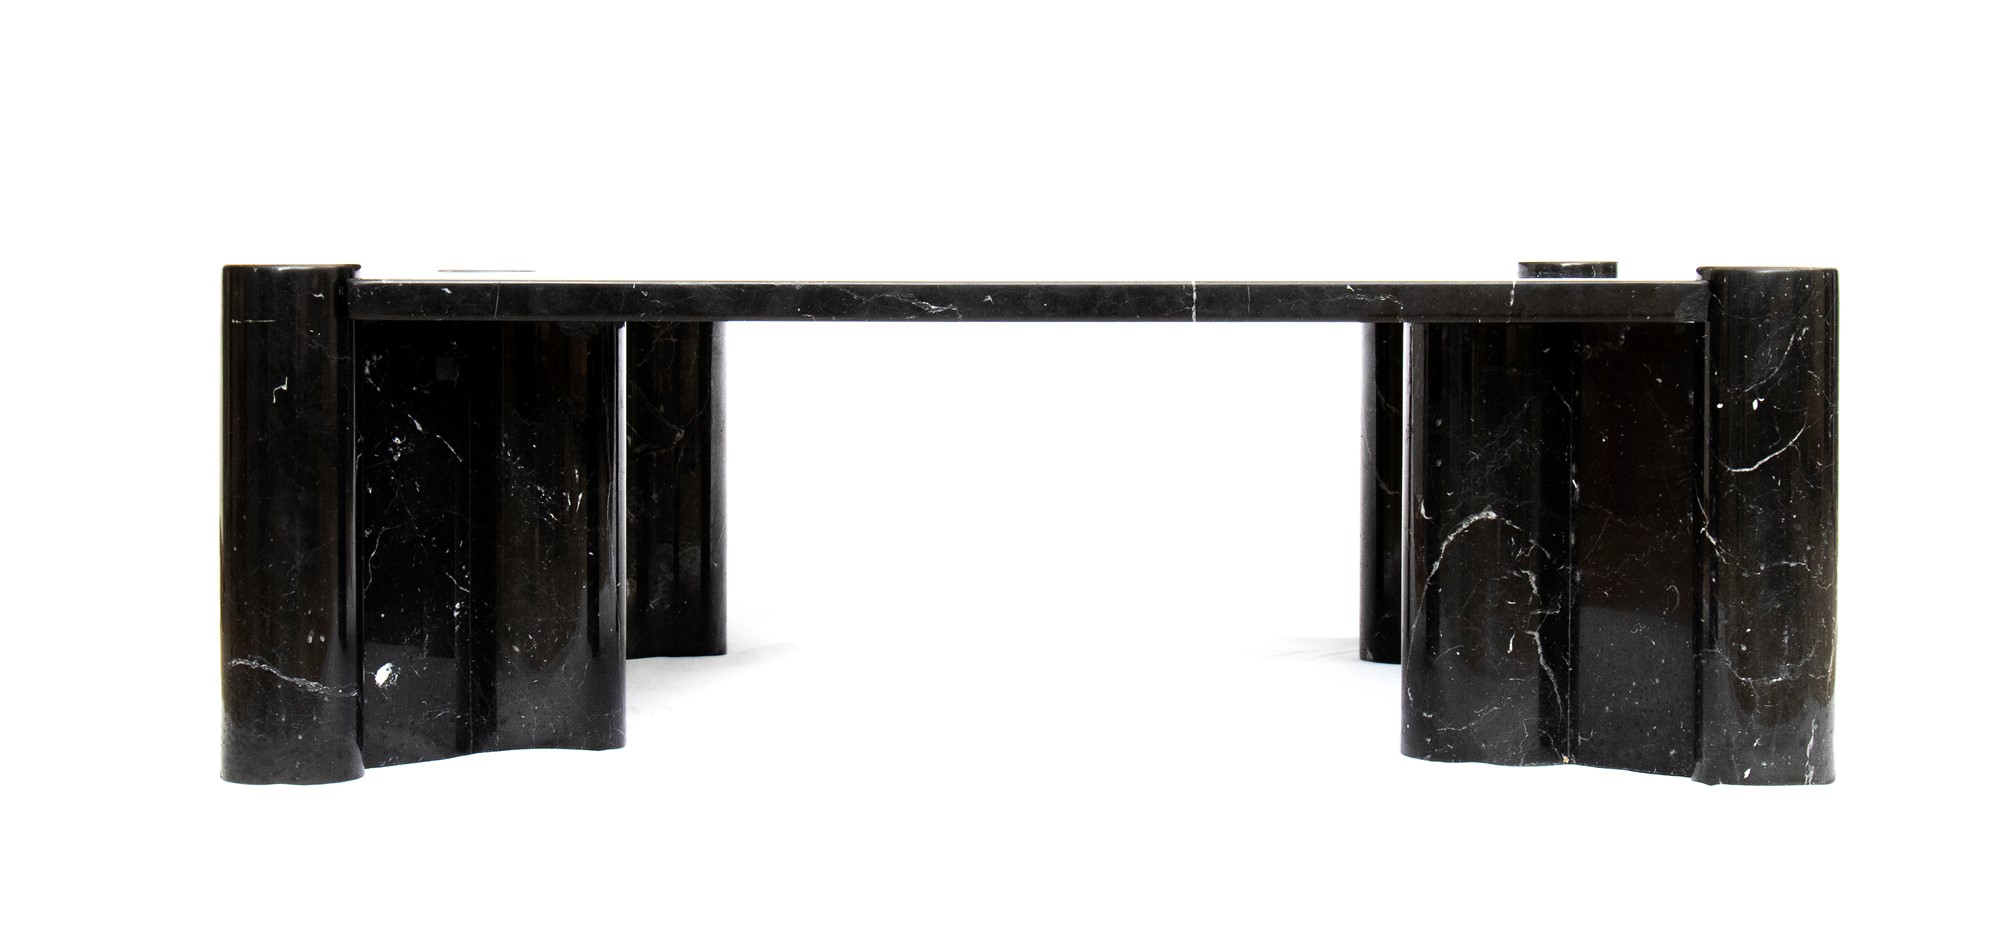 Gae Aulenti Palazzolo dello Stella 1927-Milano 2012 Living room table in black marble marquinia mod - Image 8 of 23